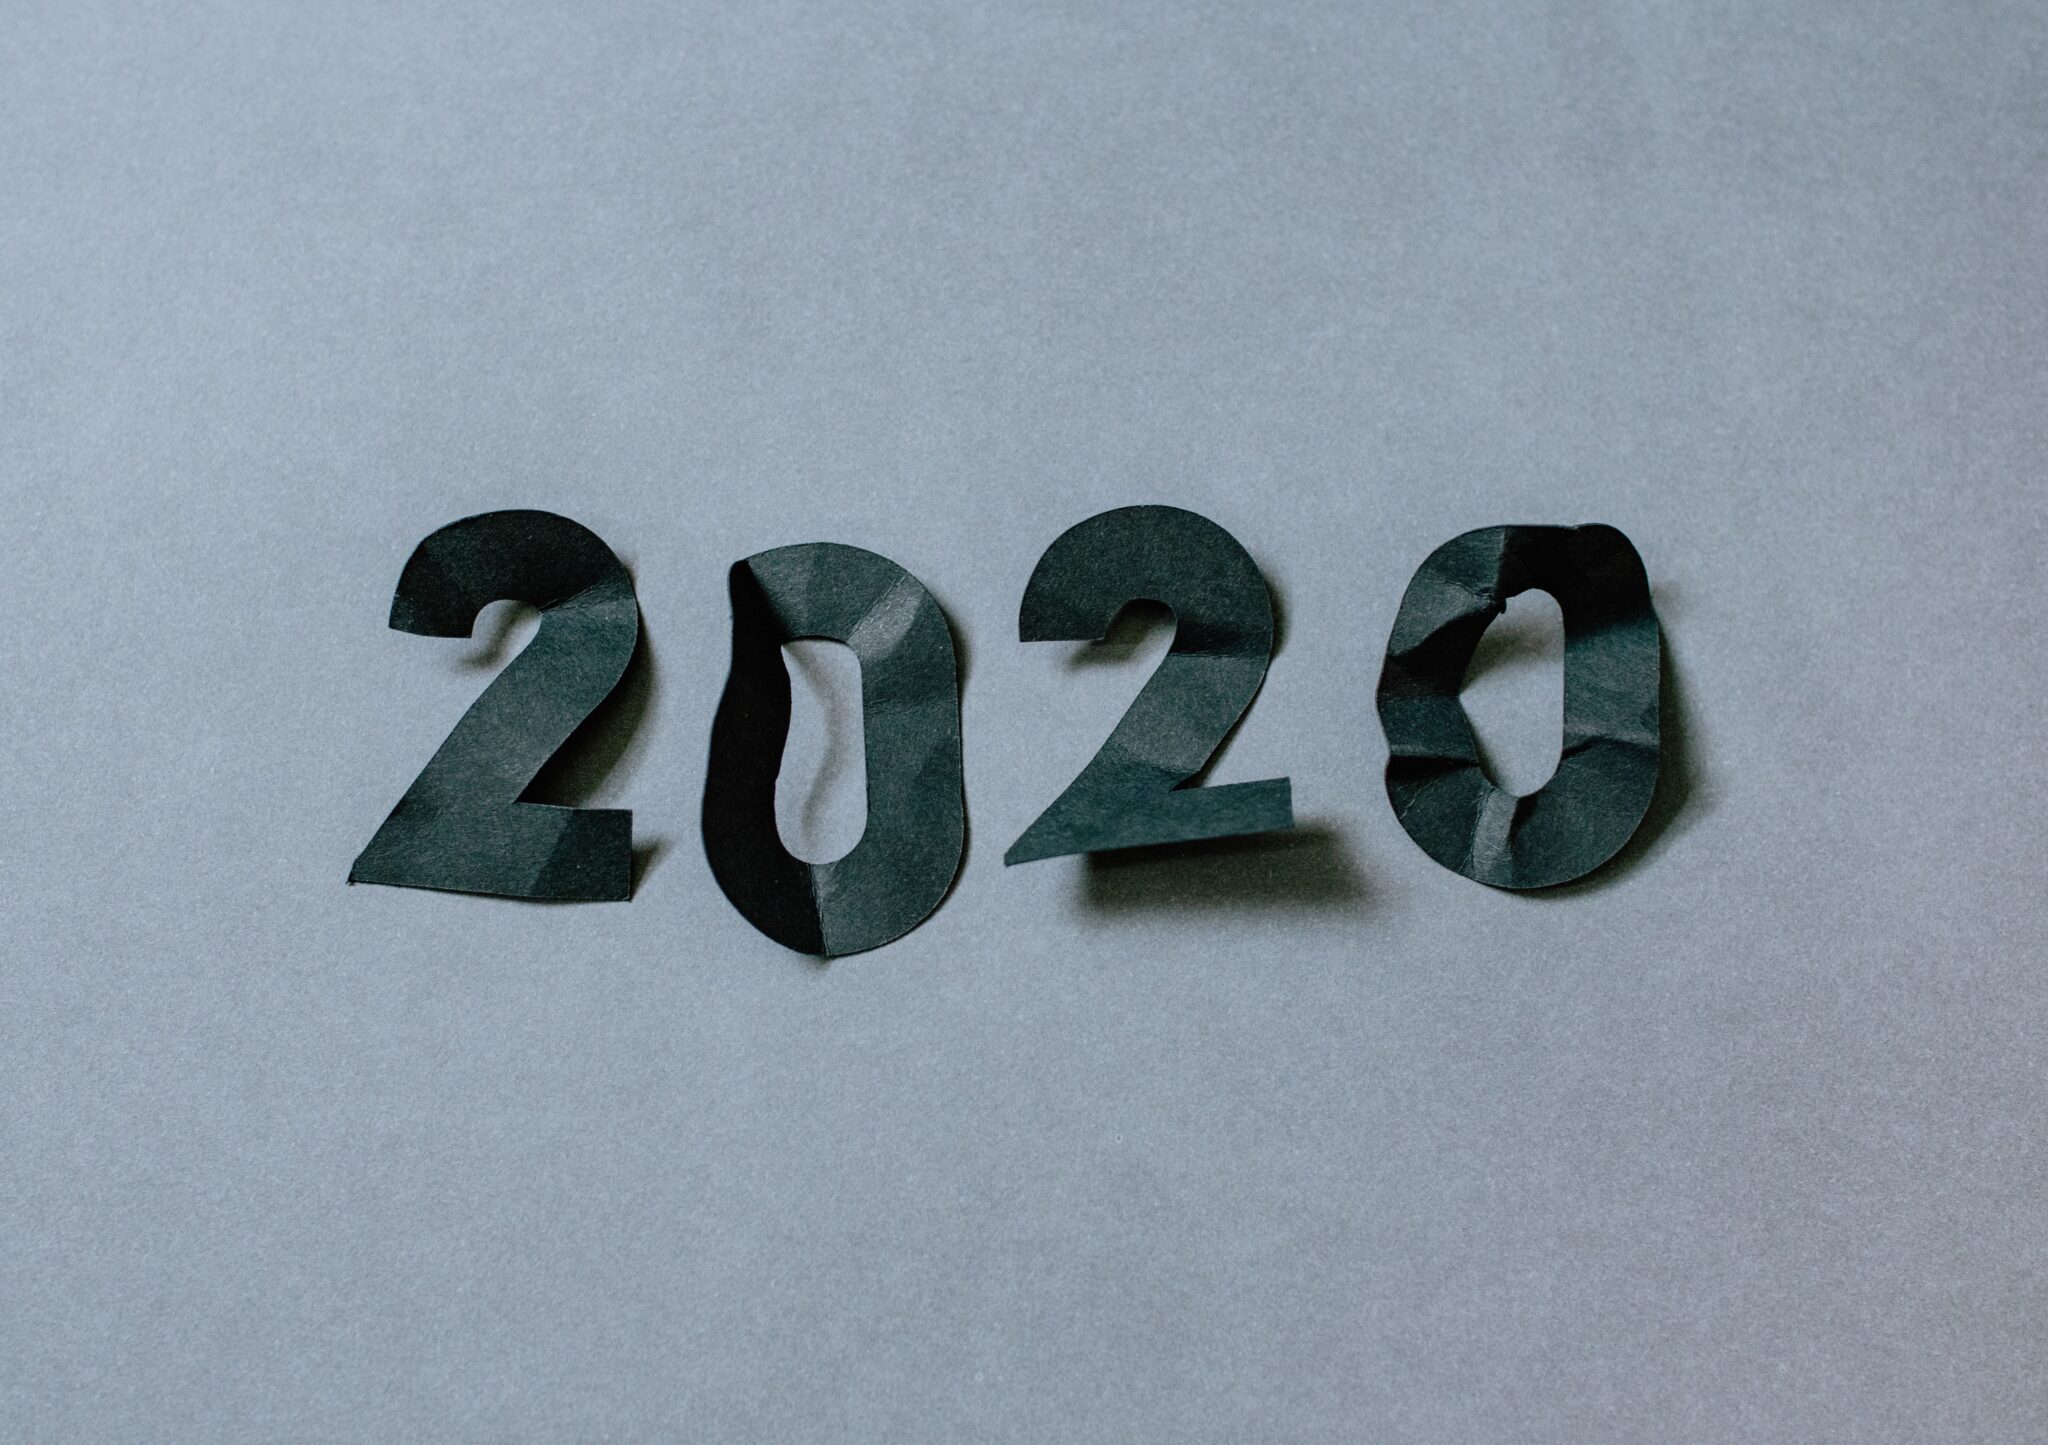 na szarym tle leżą wycięte z czarnego papieru, pogniecione cyfry układające się w numer roku 2020